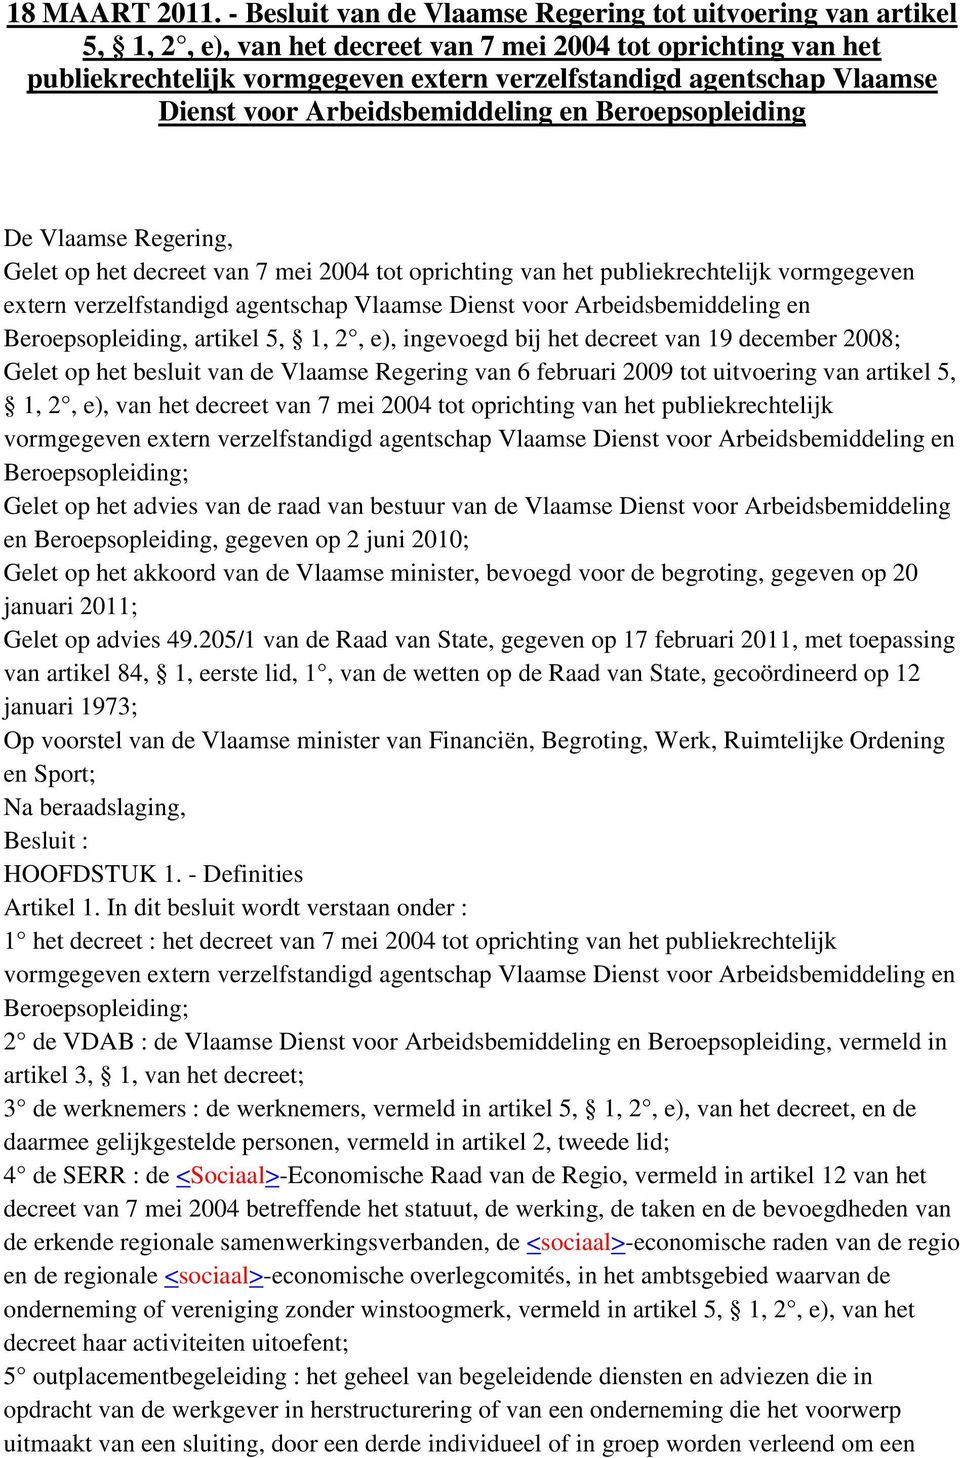 Dienst voor Arbeidsbemiddeling en Beroepsopleiding De Vlaamse Regering, Gelet op het decreet van 7 mei 2004 tot oprichting van het publiekrechtelijk vormgegeven extern verzelfstandigd agentschap